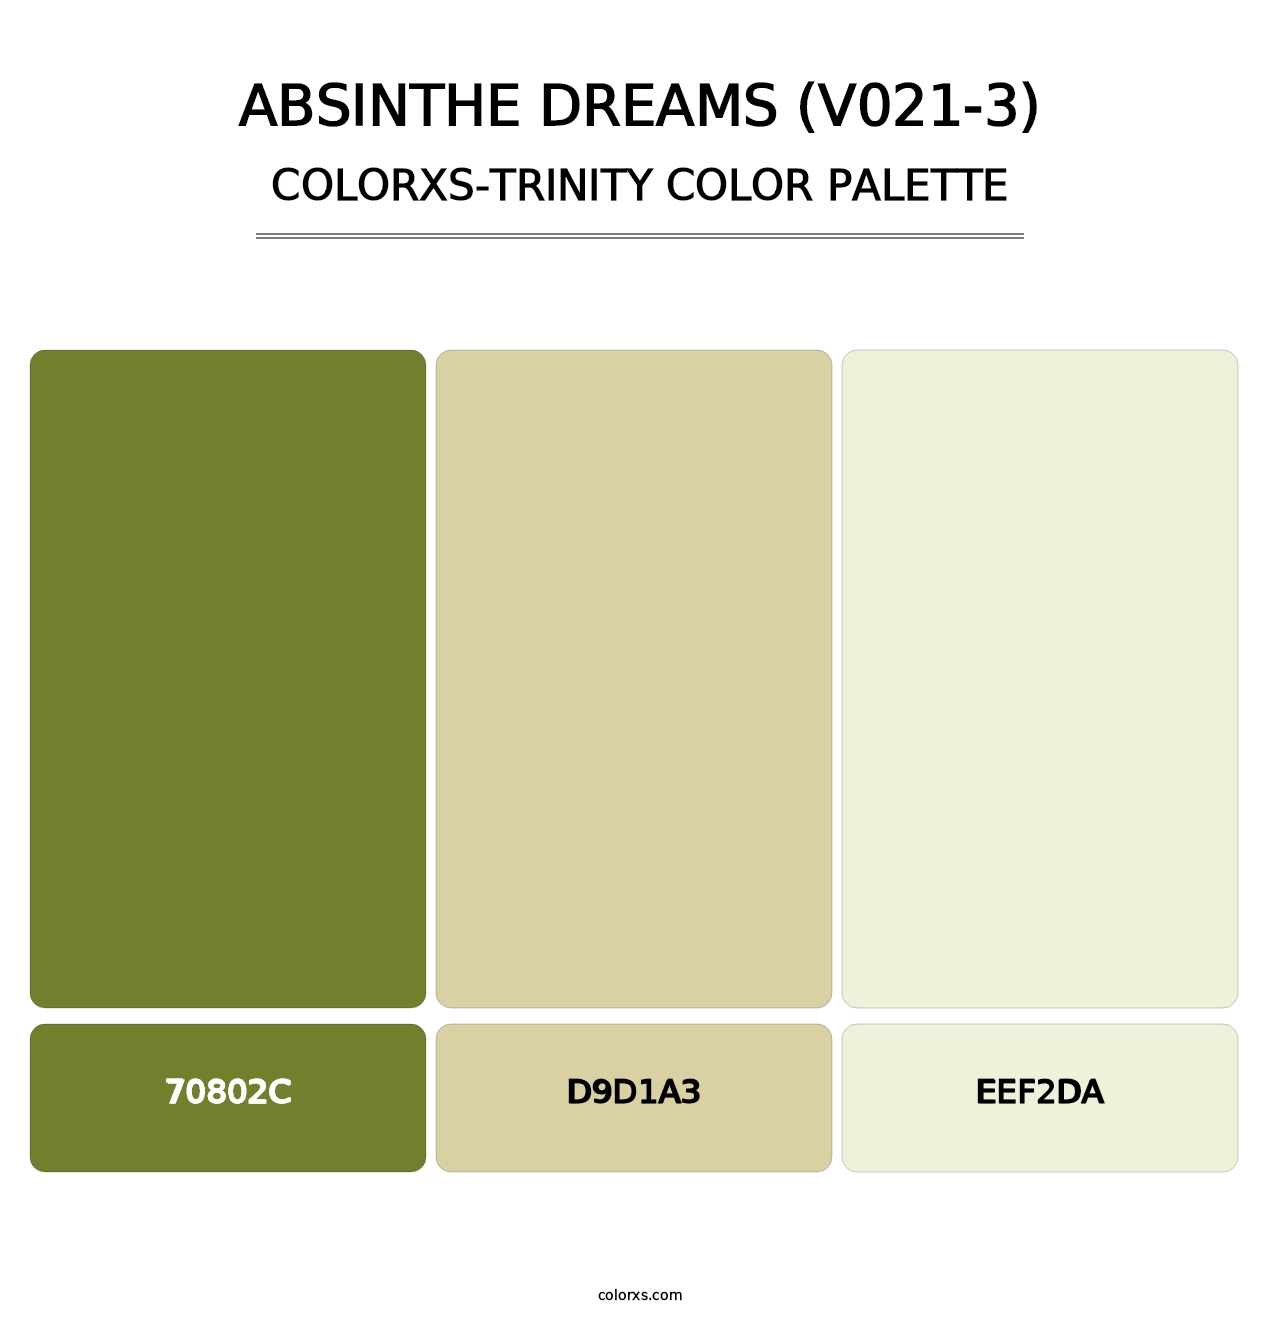 Absinthe Dreams (V021-3) - Colorxs Trinity Palette